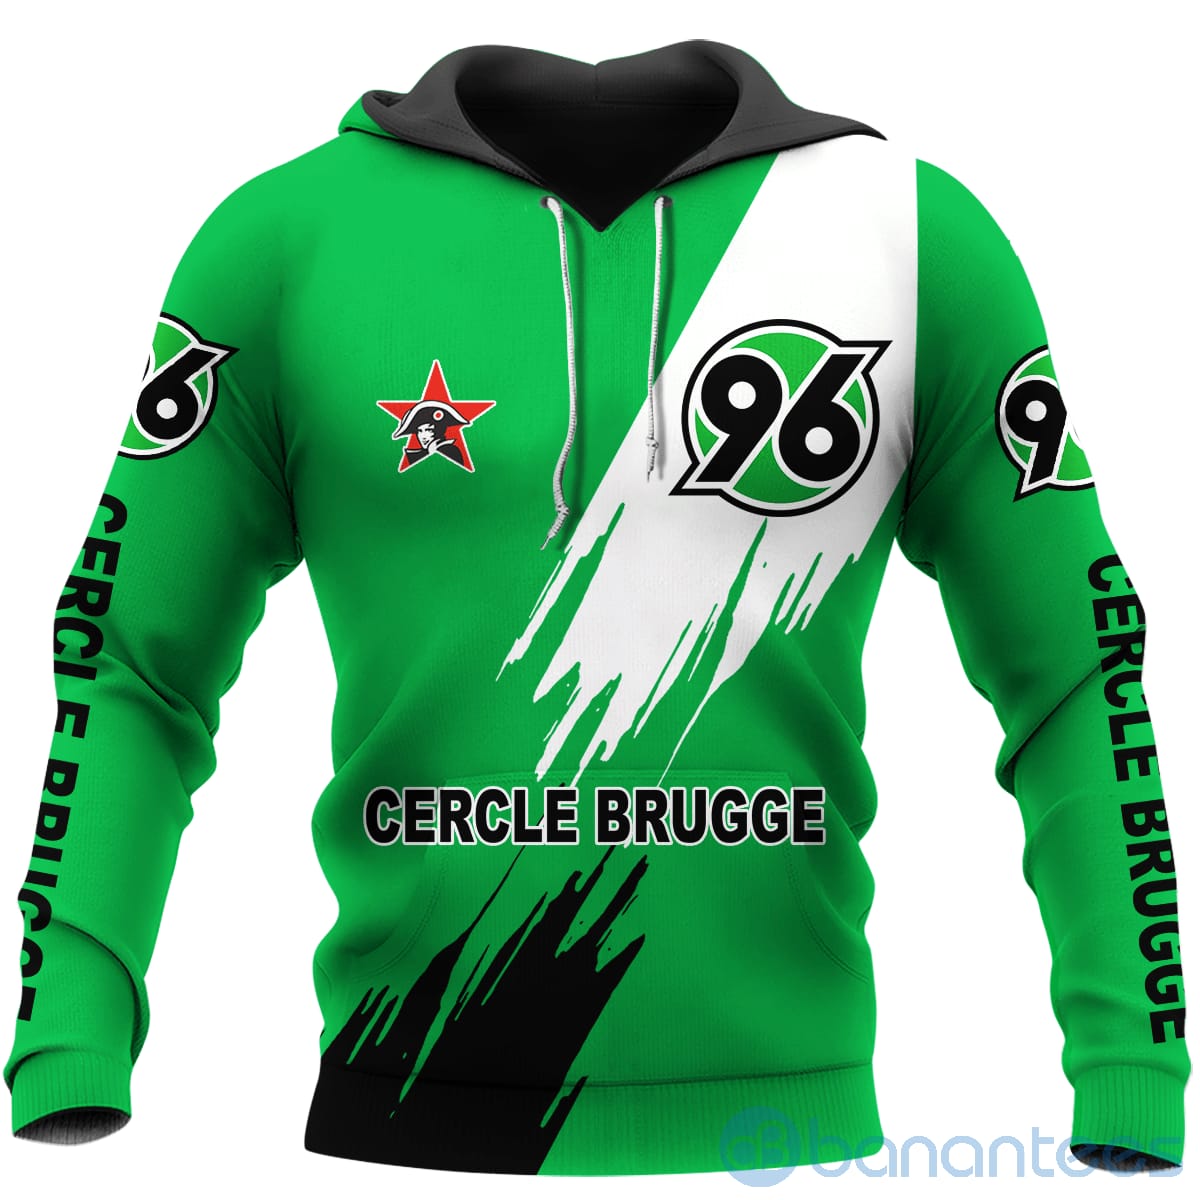 Cercle Brugge Green All Over Printed Hoodies Zip Hoodies